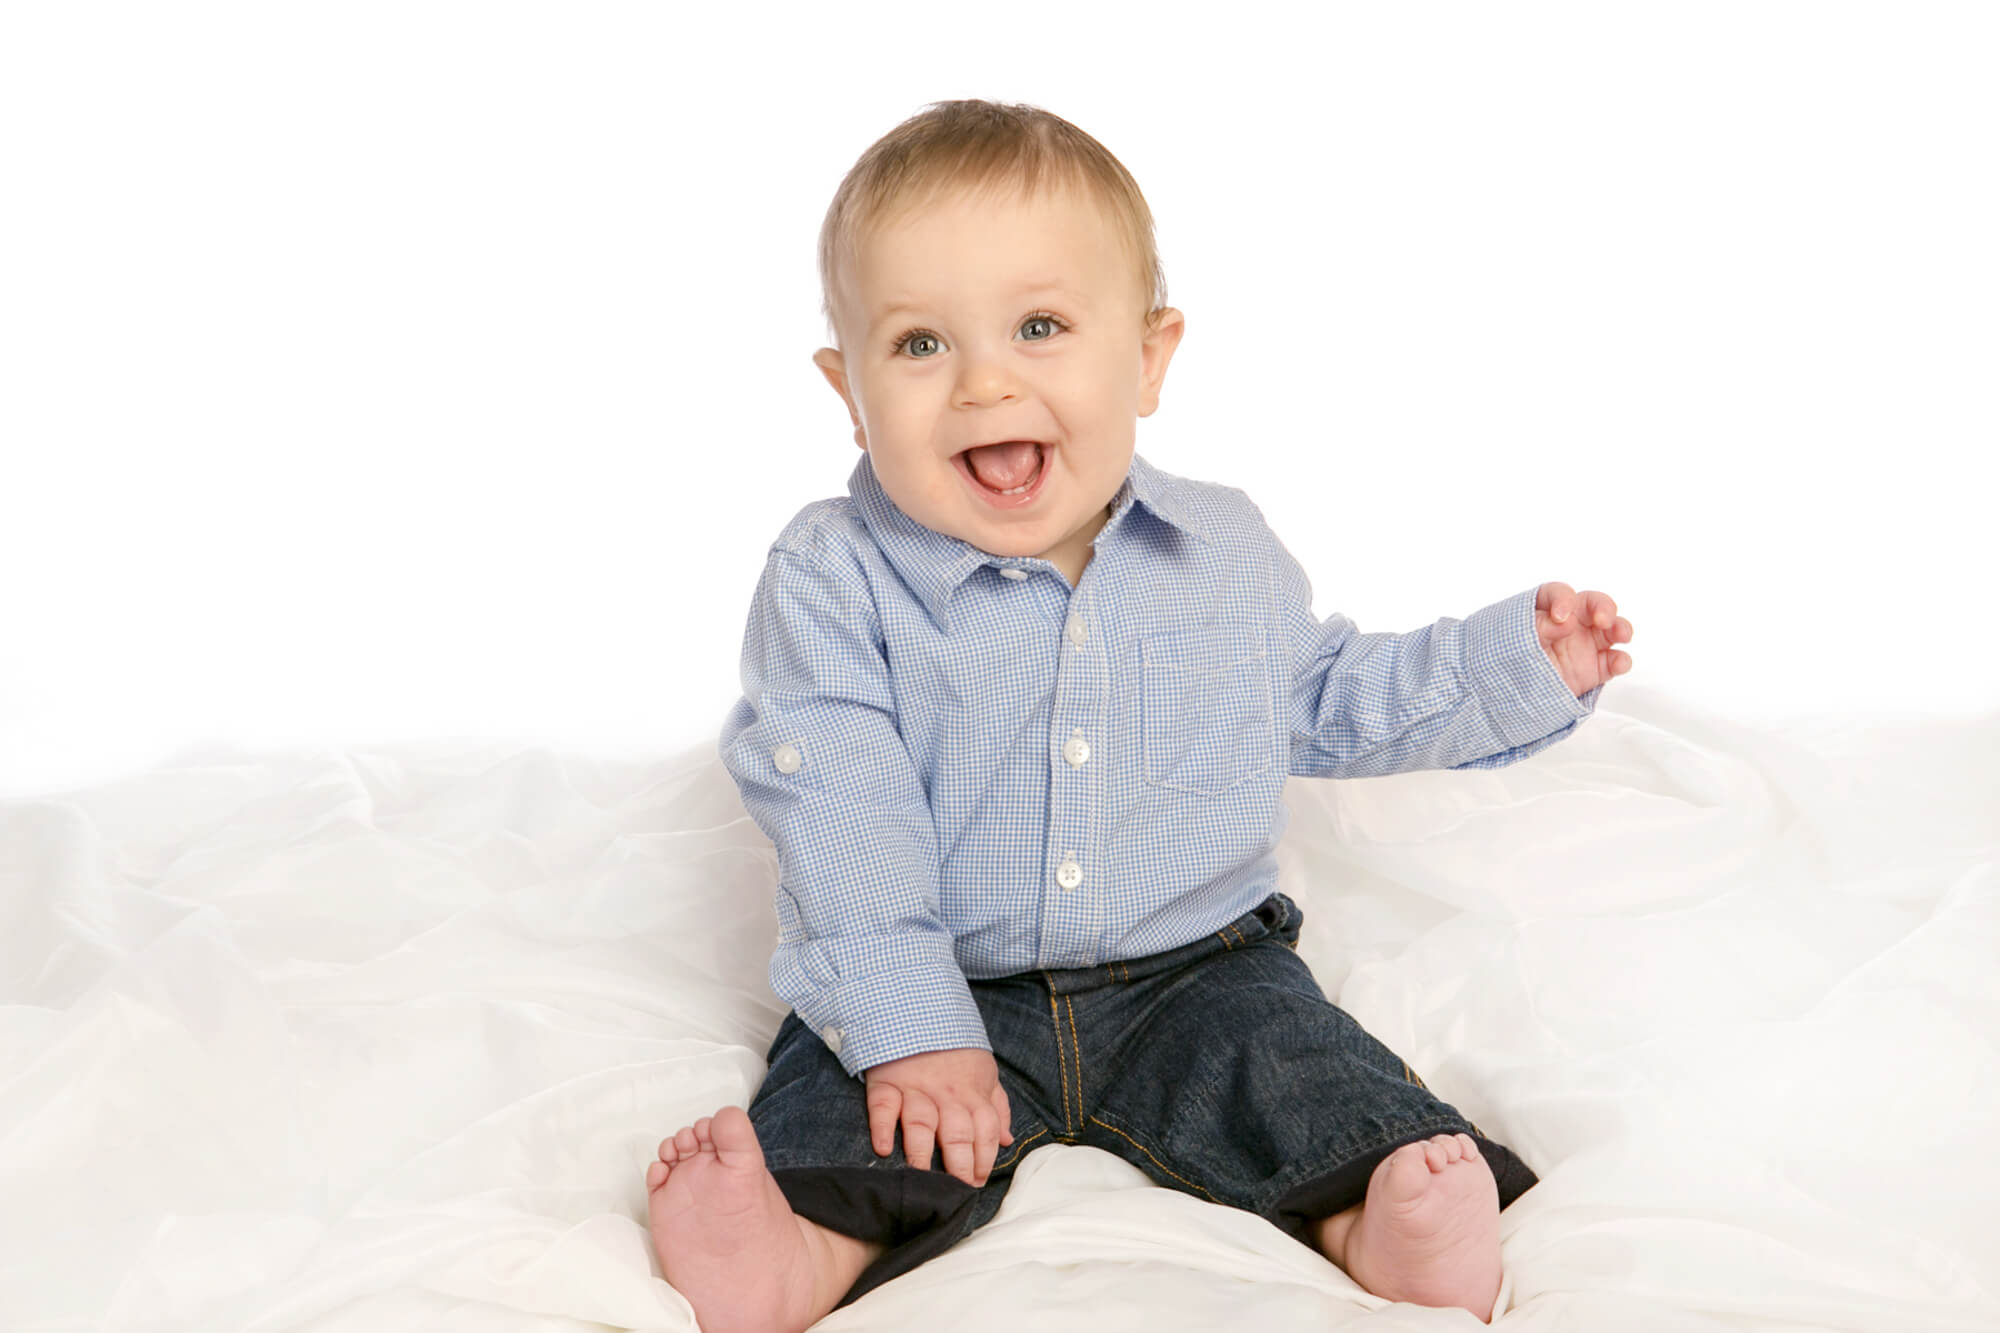 Baby Boy Portraits taken on White Backdrop